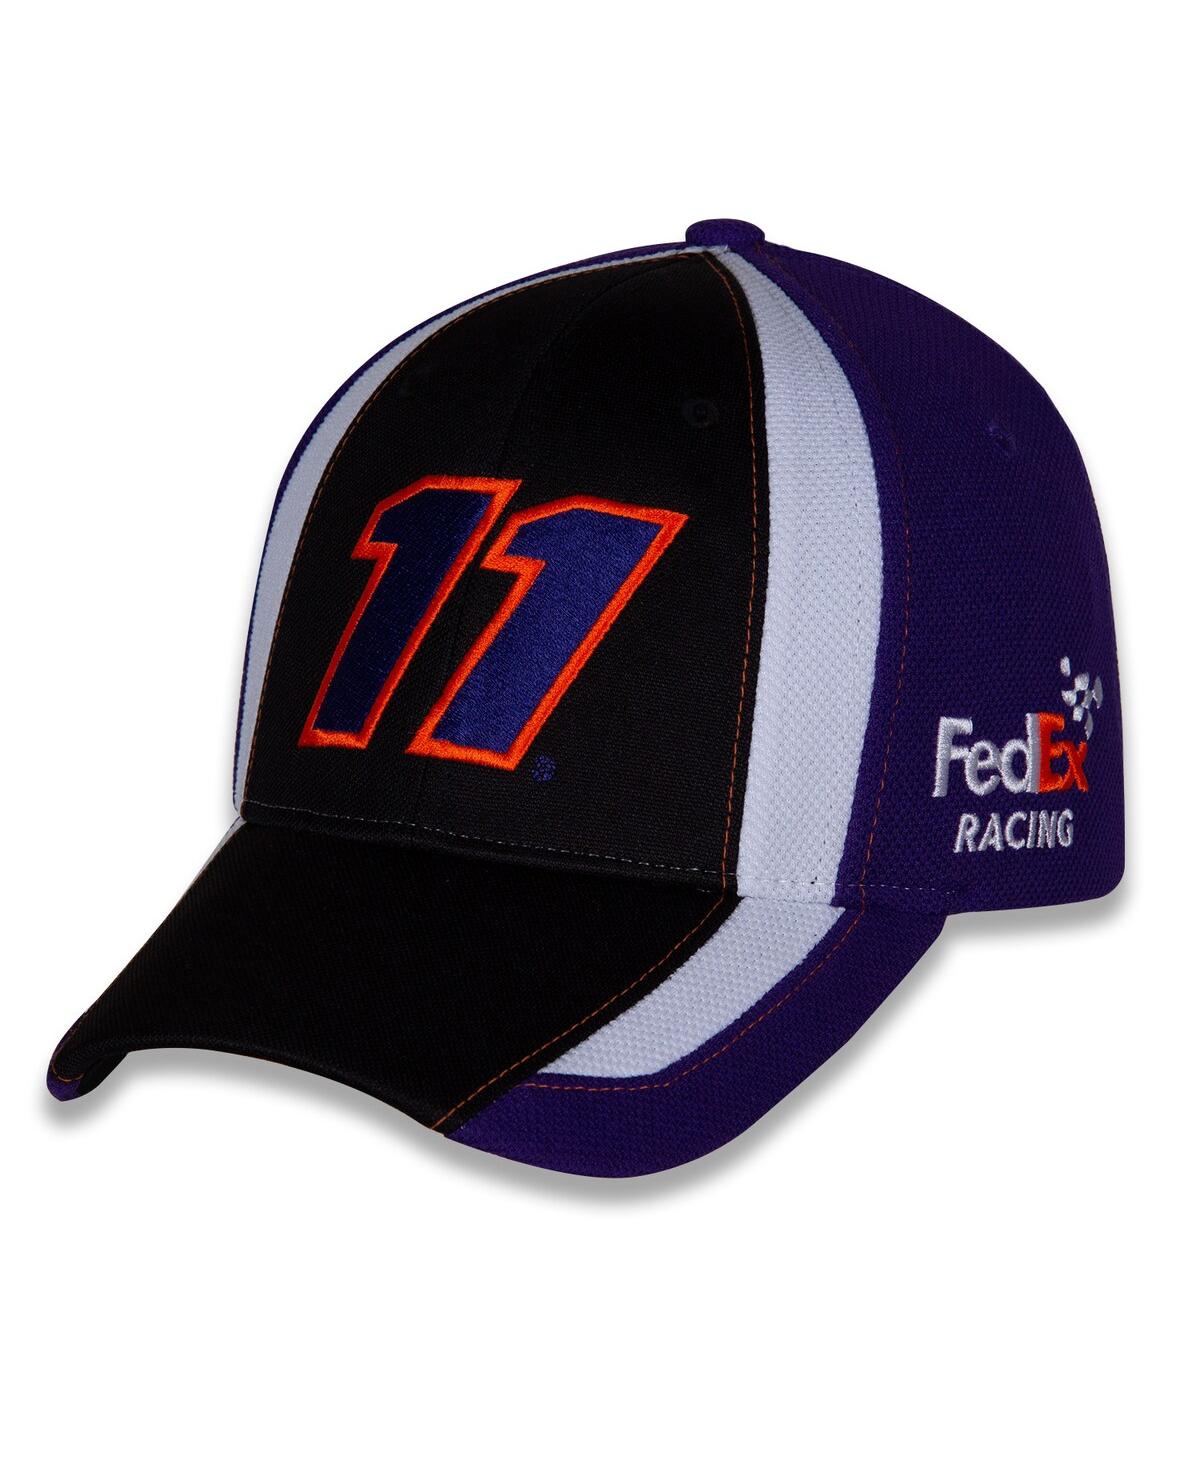 Men's Joe Gibbs Racing Team Collection Black, Navy Denny Hamlin Restart Adjustable Hat - Black, Navy